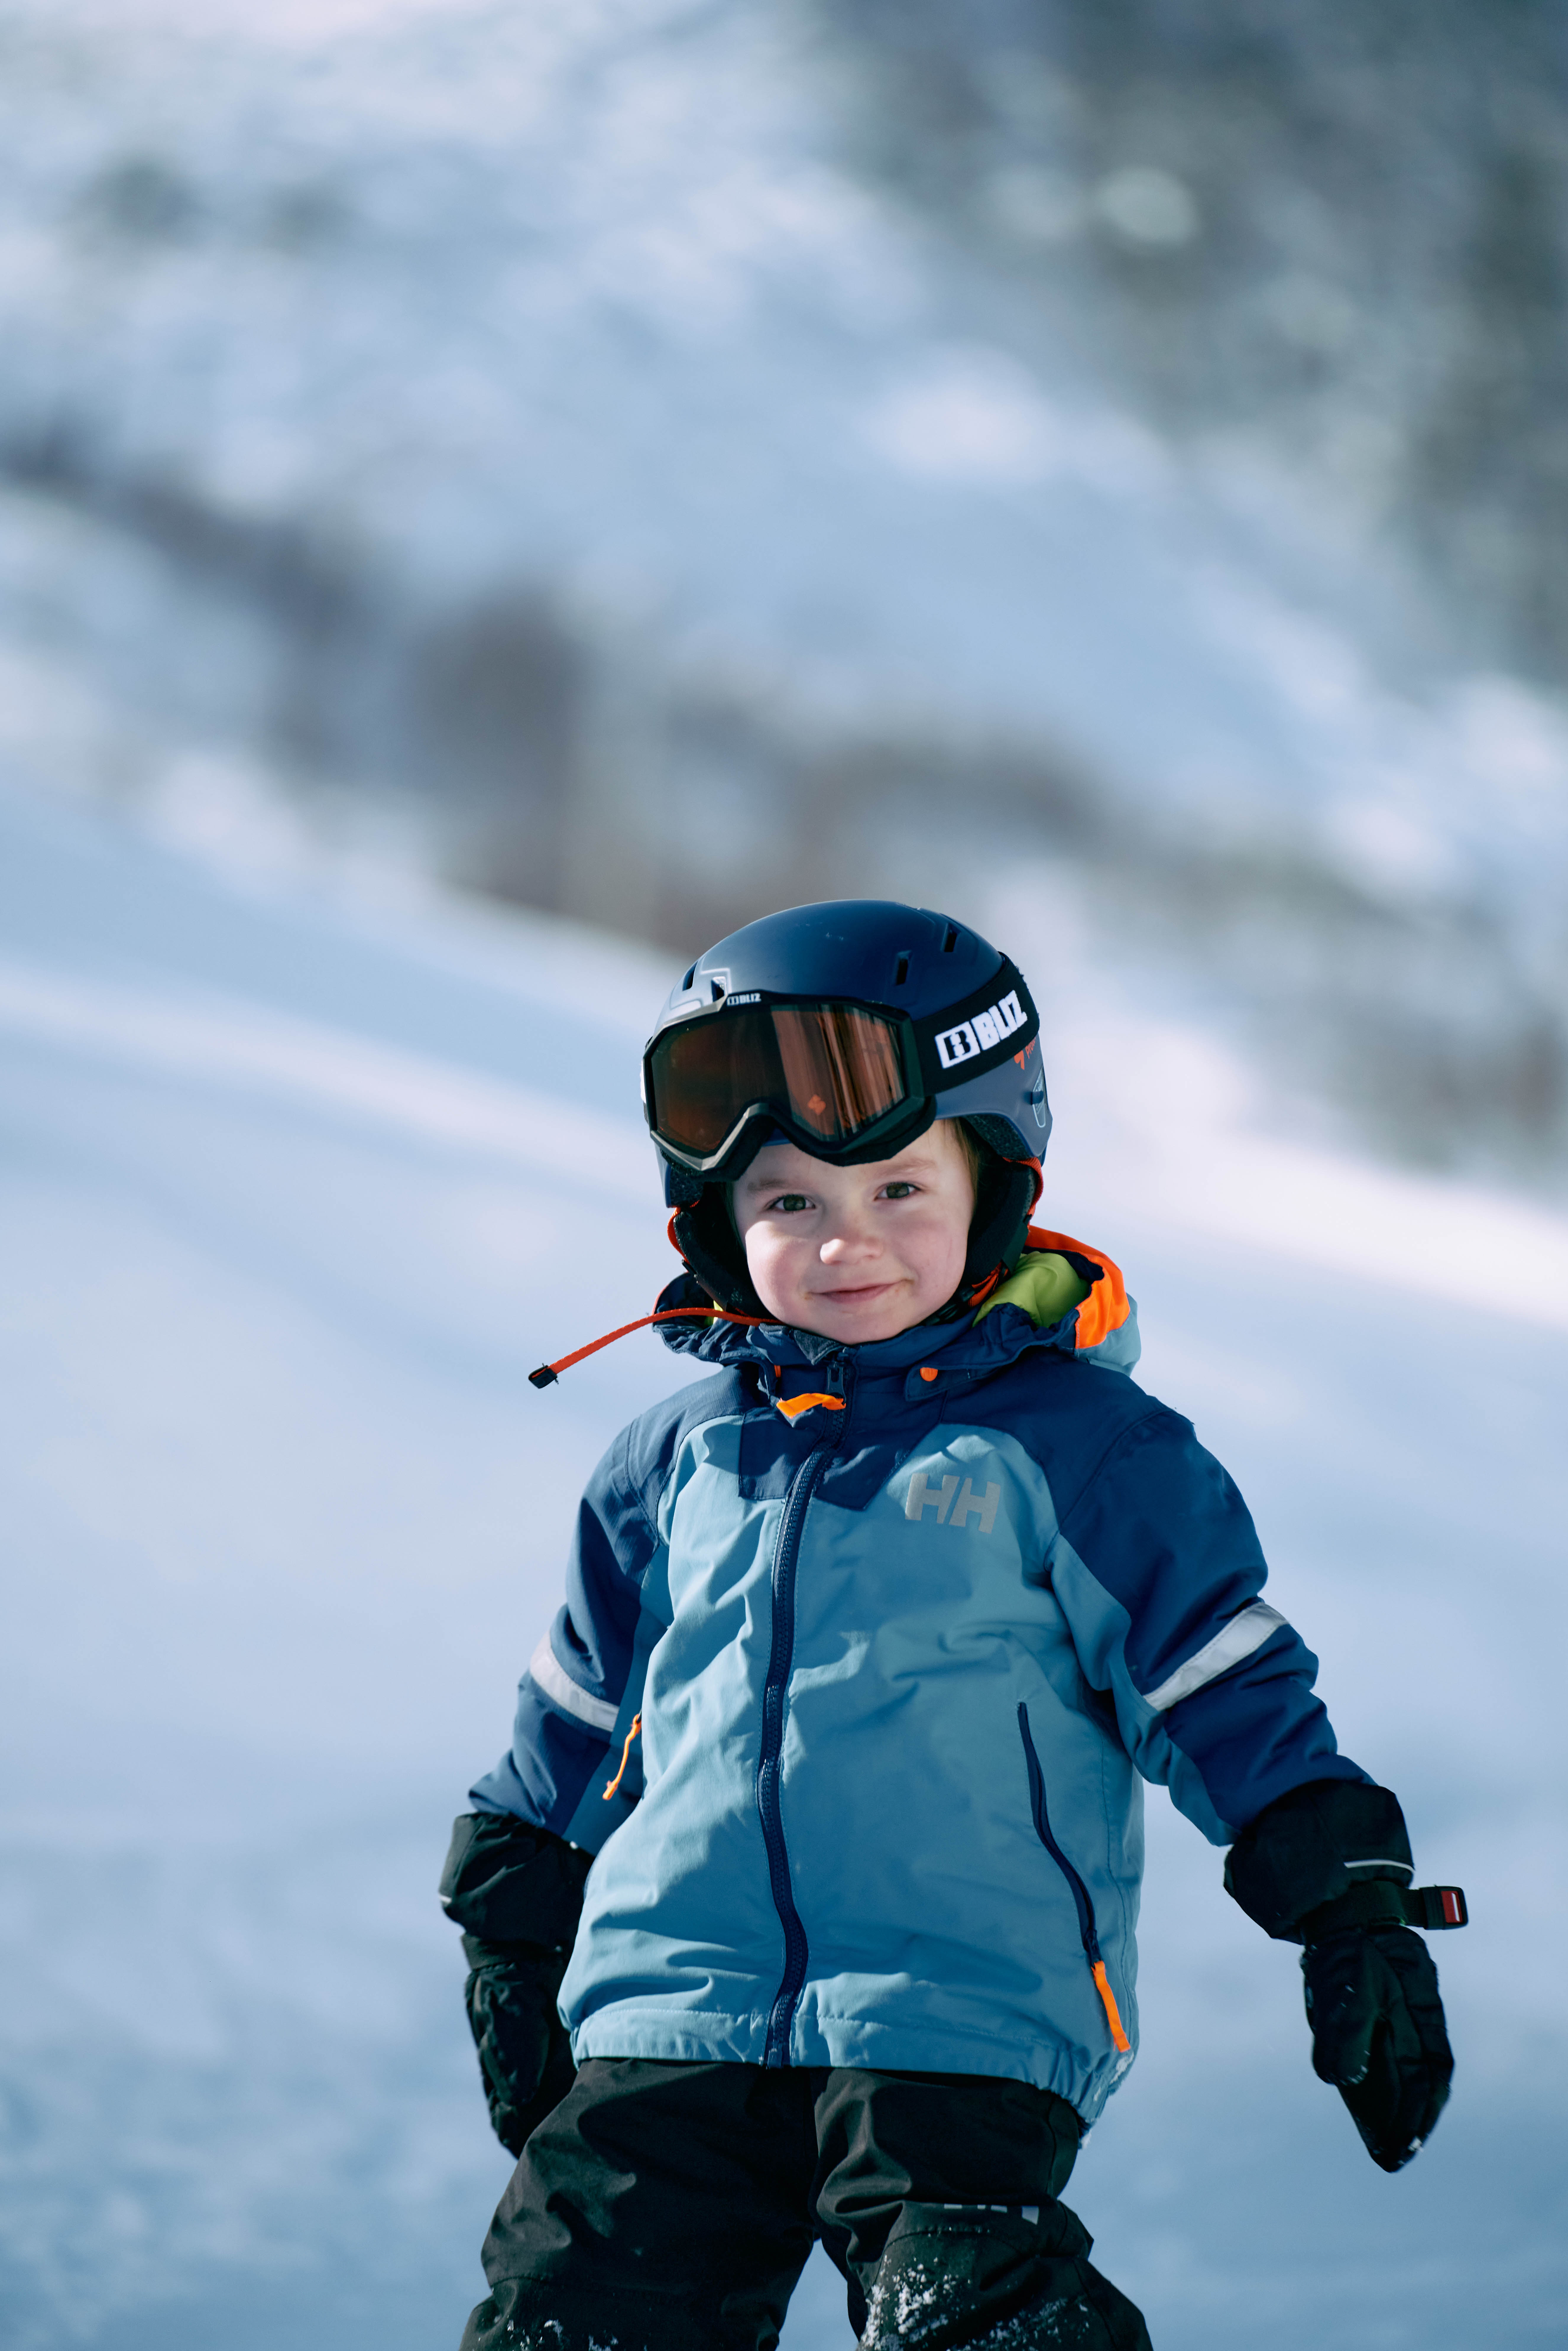 Barn ski